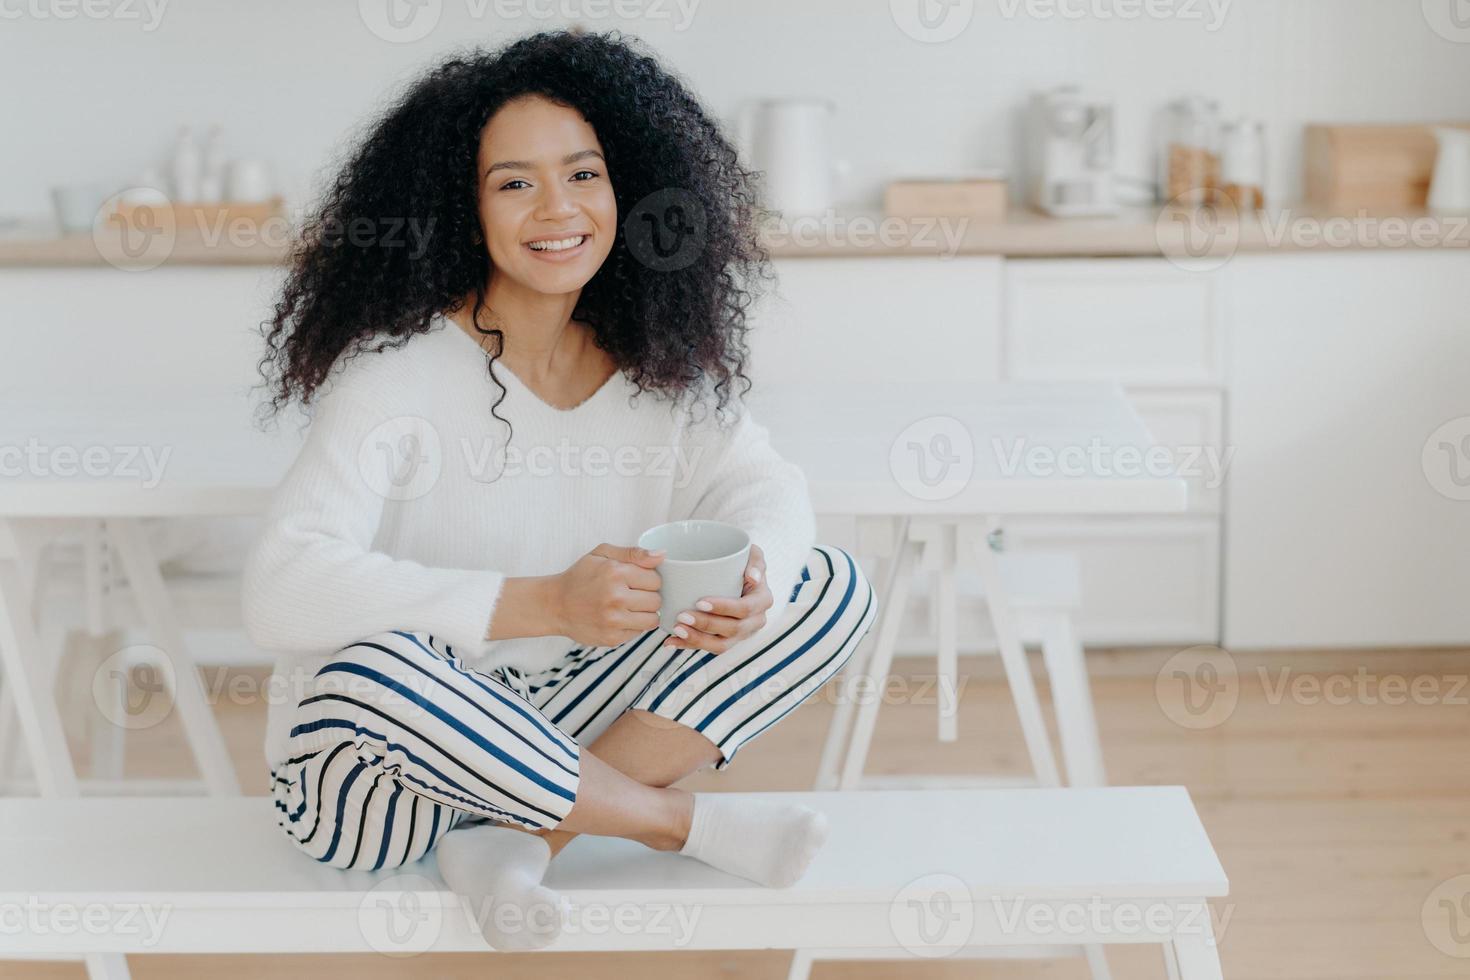 fröhliches morgenkonzept. Foto einer fröhlichen, lockigen Afroamerikanerin sitzt in Lotus-Pose auf einer weißen Bank, nippt an einem leckeren aromatischen Getränk, fühlt sich entspannt, posiert vor dem Kücheninterieur und lächelt breit